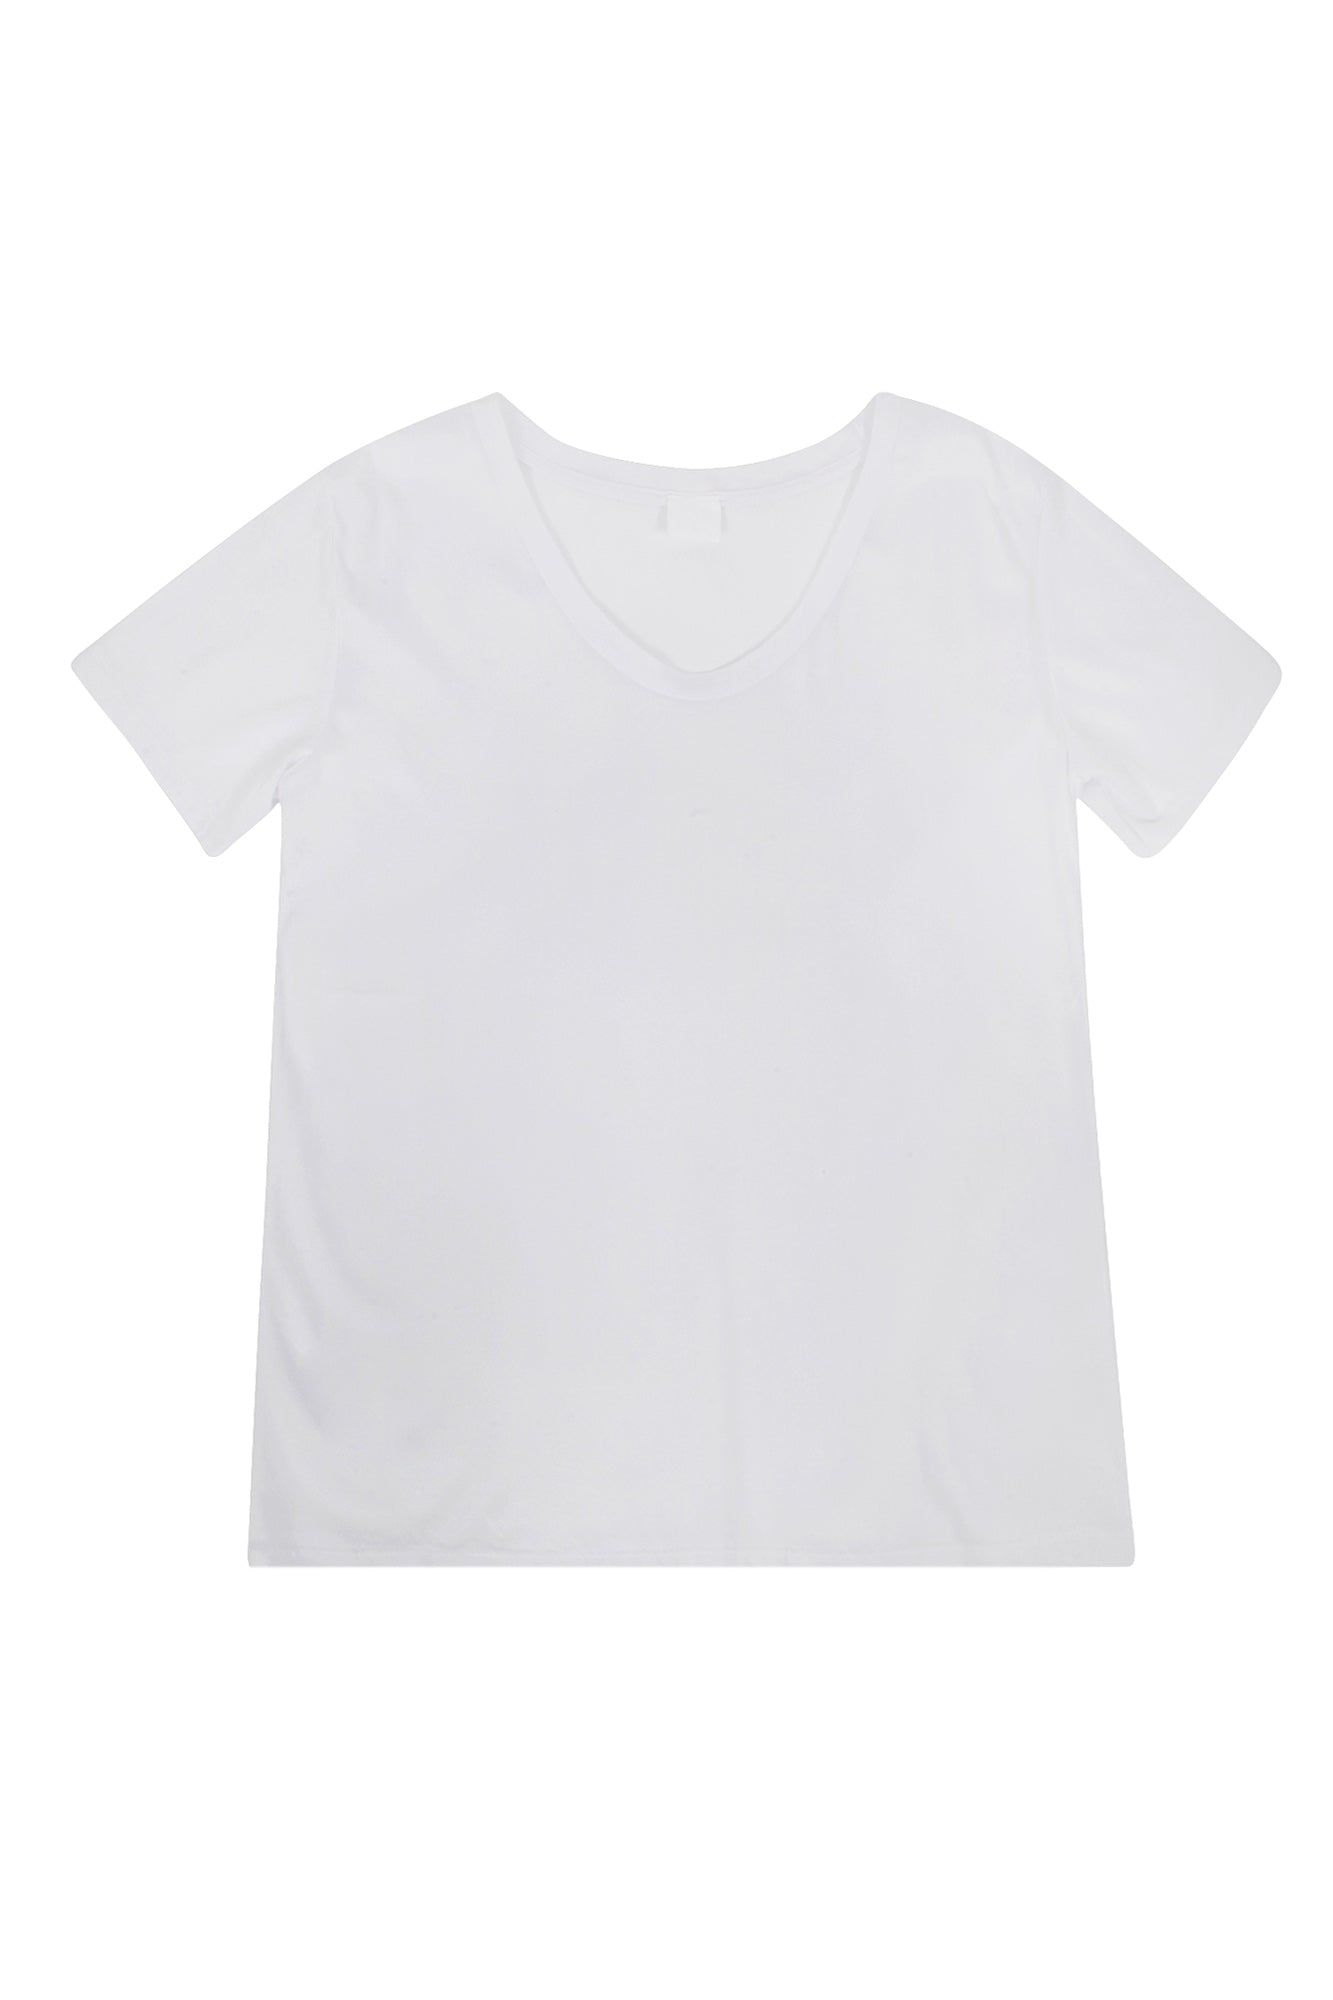 La Femme Blanche - T-shirt - 431582 - Bianco